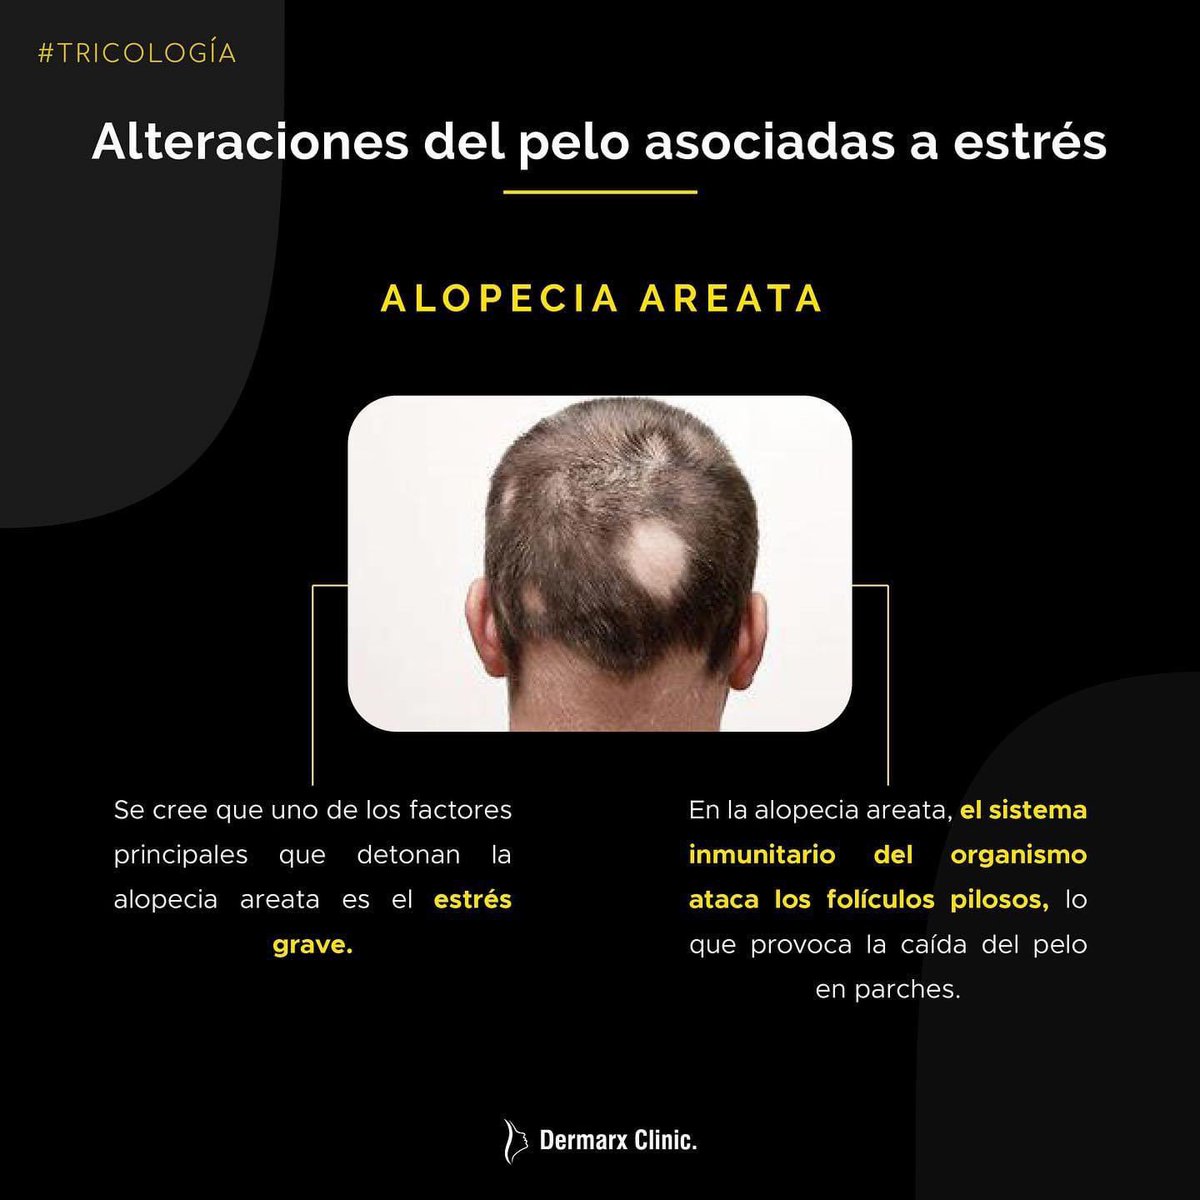 El estrés es el gran detonante de muchísimas patologías para las cuales tenemos predisposición genética.
#adaptogens #stress #stressprotection #adaptogenos #caidadepelo #estres #caidadepeloporestres #efluvio #efluviotelogeno #alopecia #alopeciaareata #tricotilomania #dermatology 